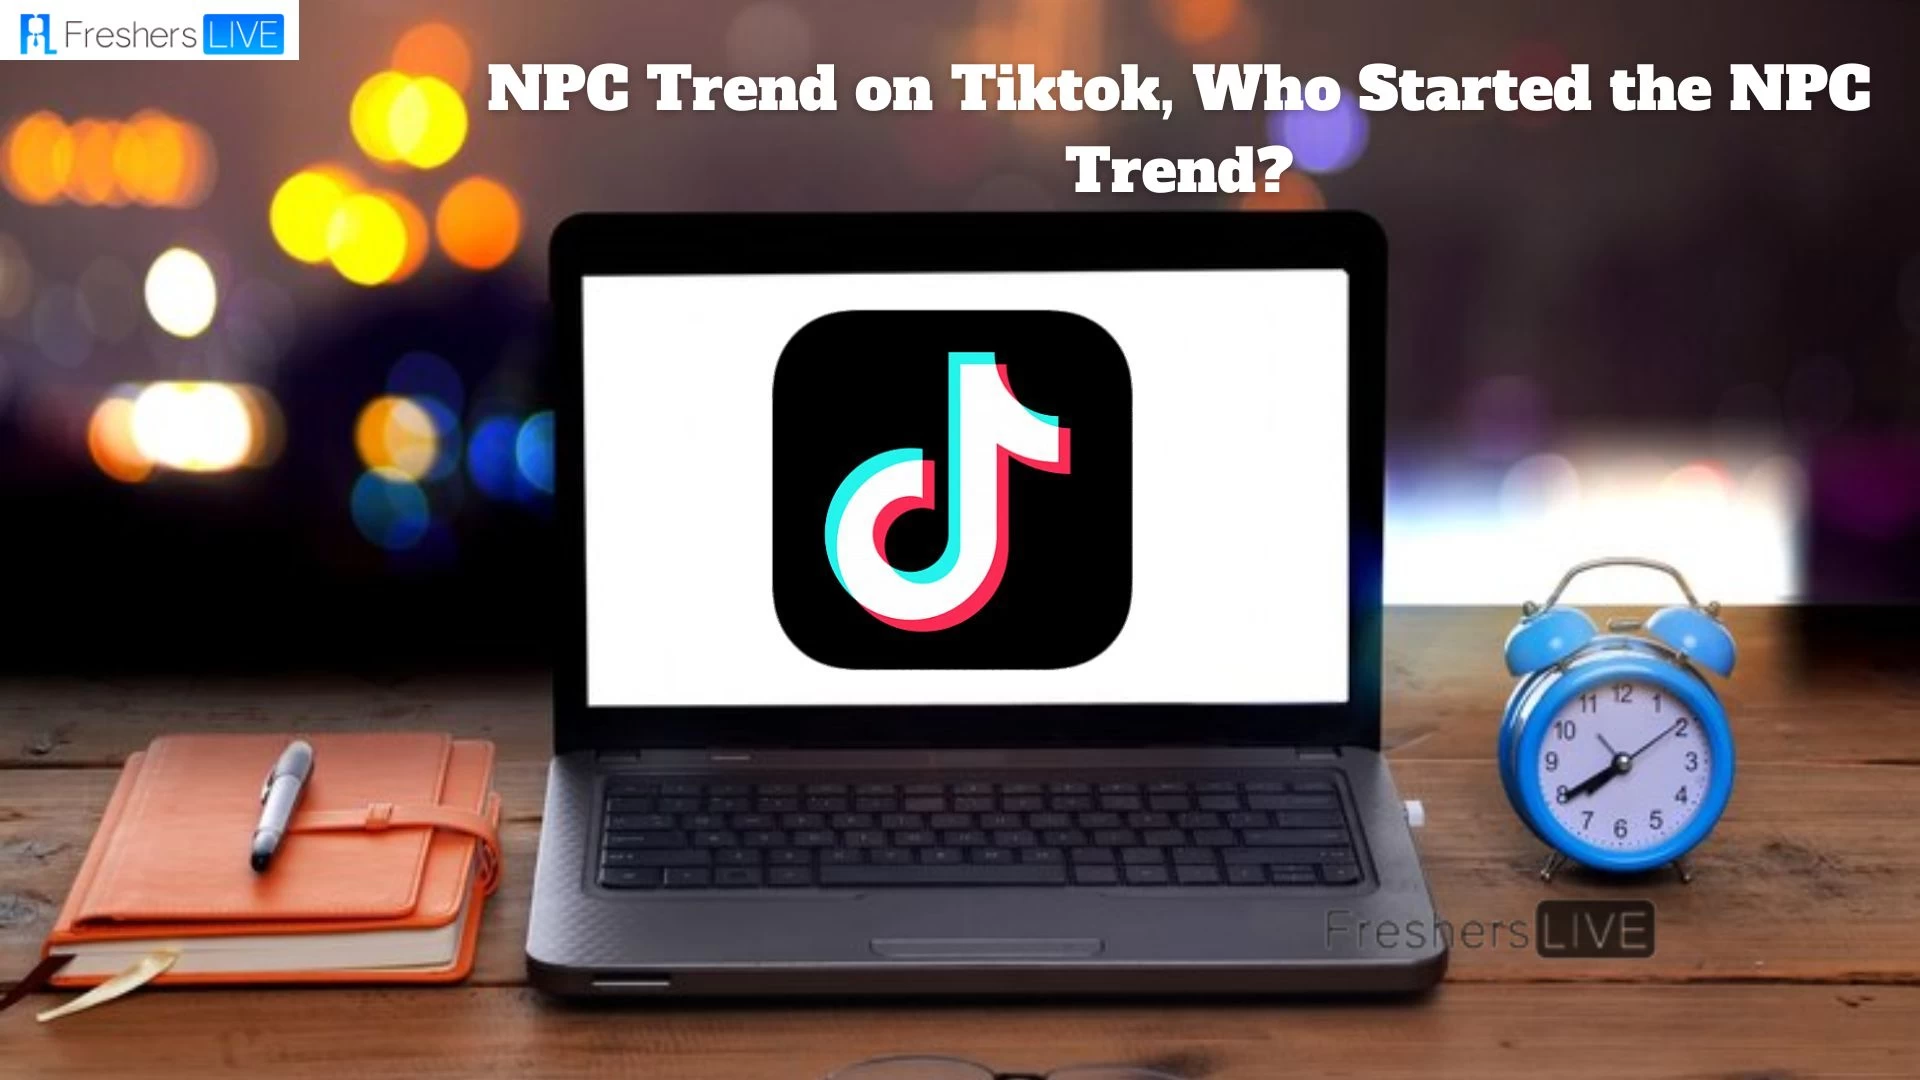 NPC Trend on Tiktok, What is the NPC Trend on Tiktok? Who Started the NPC Trend?